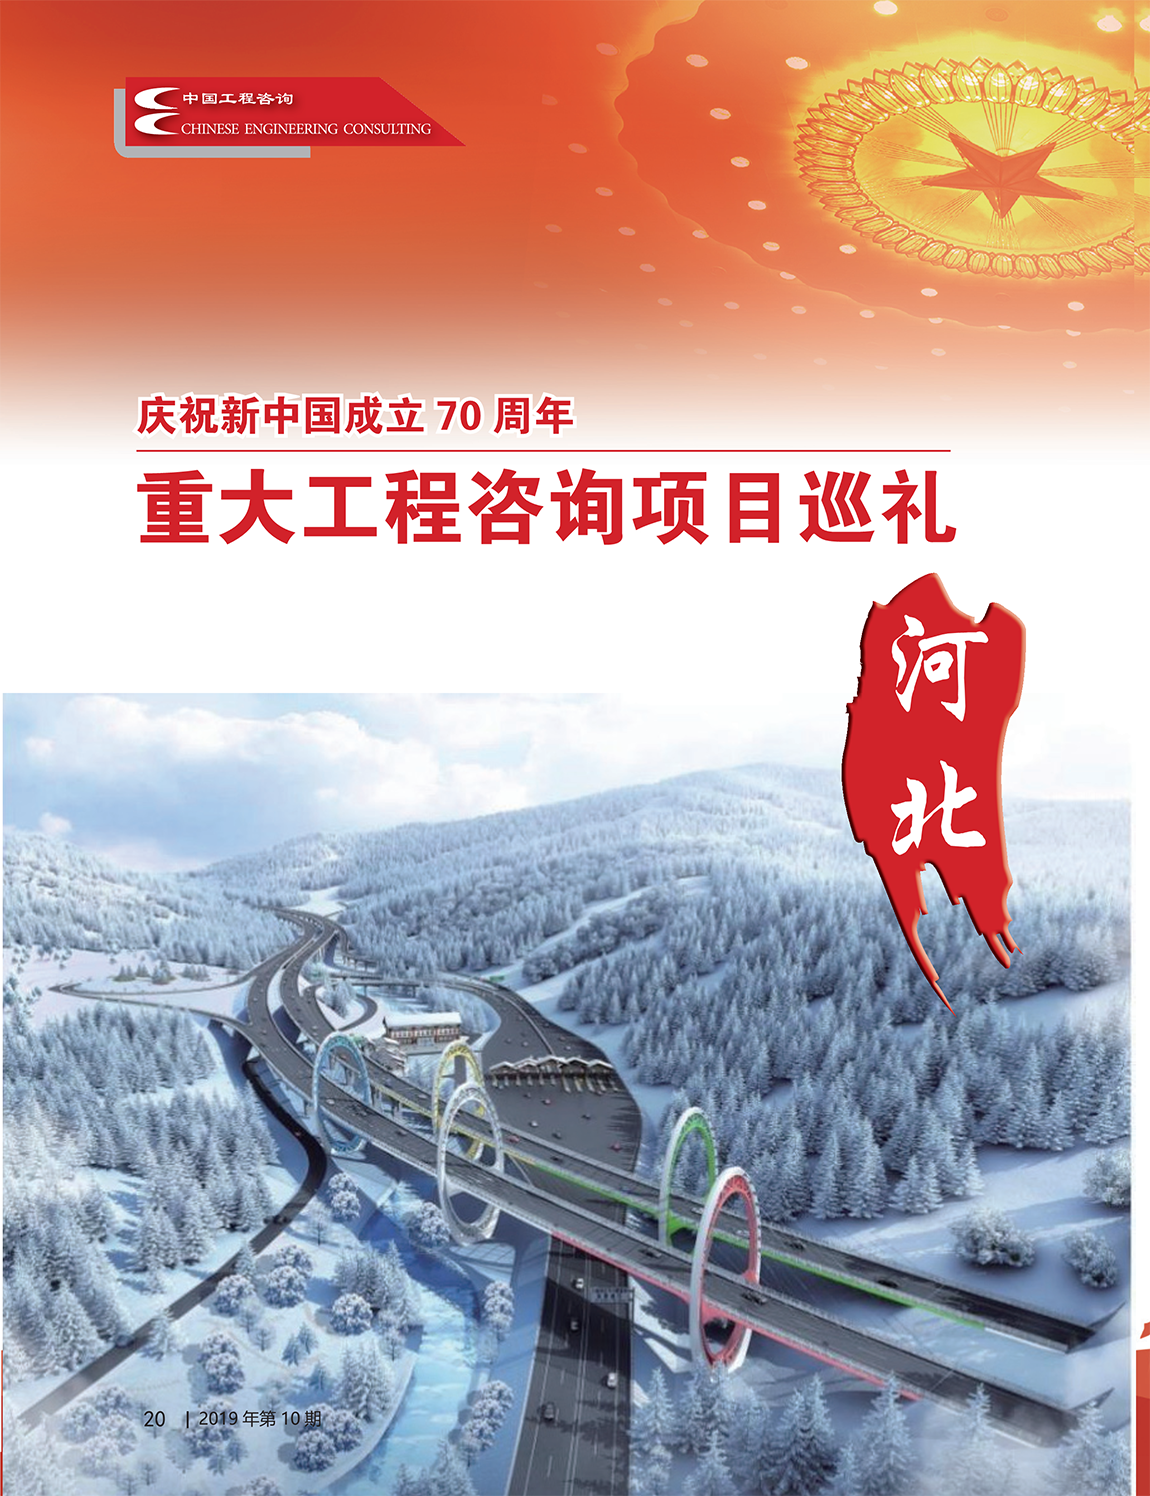 中国工程咨询2019年第十期_20-1